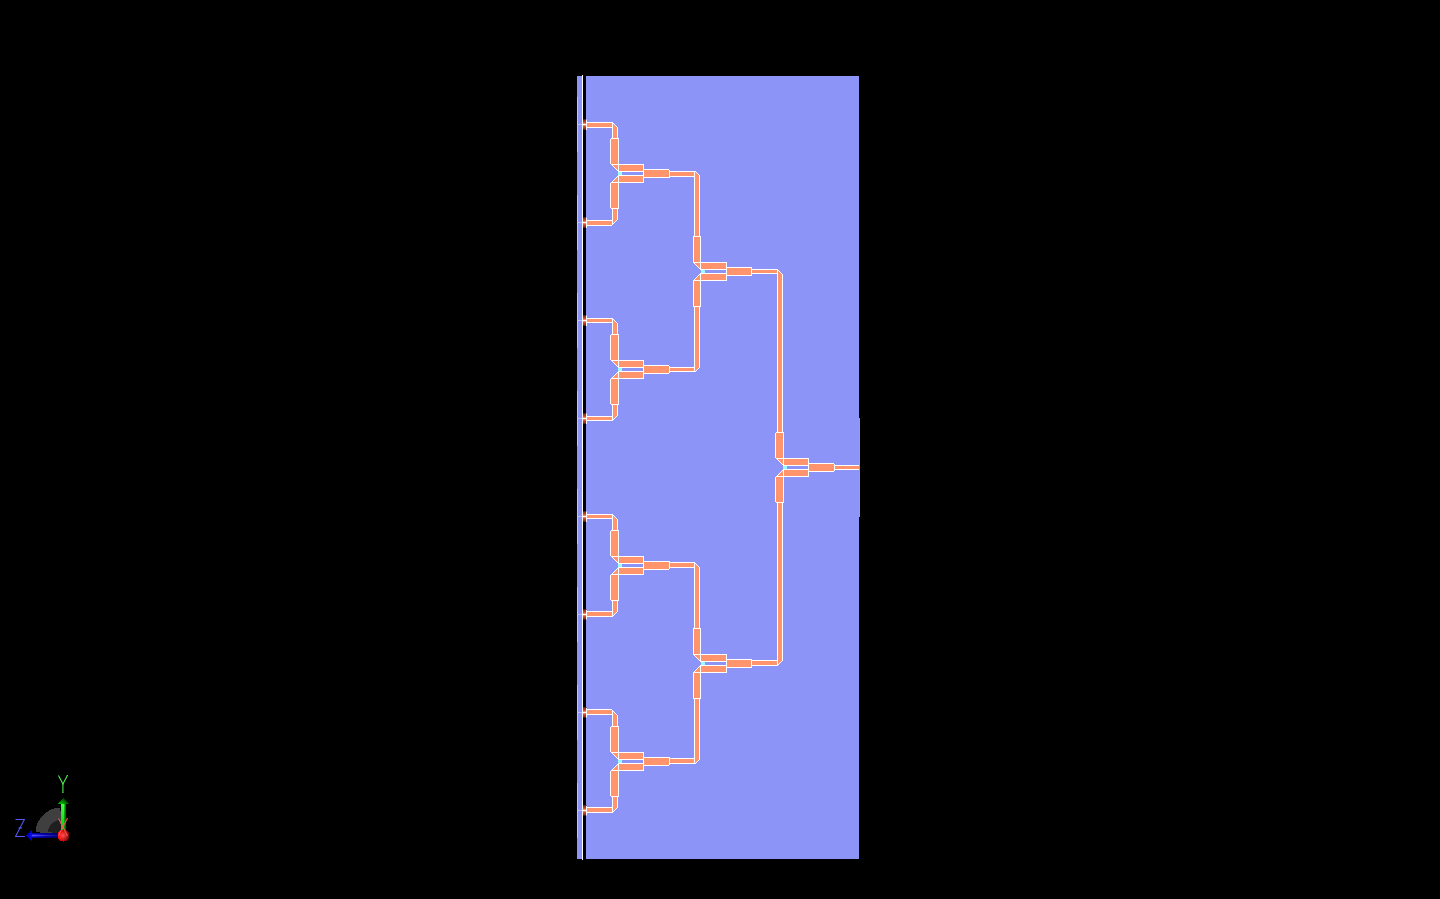 図9：ウィルキンソン・パワー・デバイダーの側面図を示し、信号を分割する3つの段階が明確に示されている。